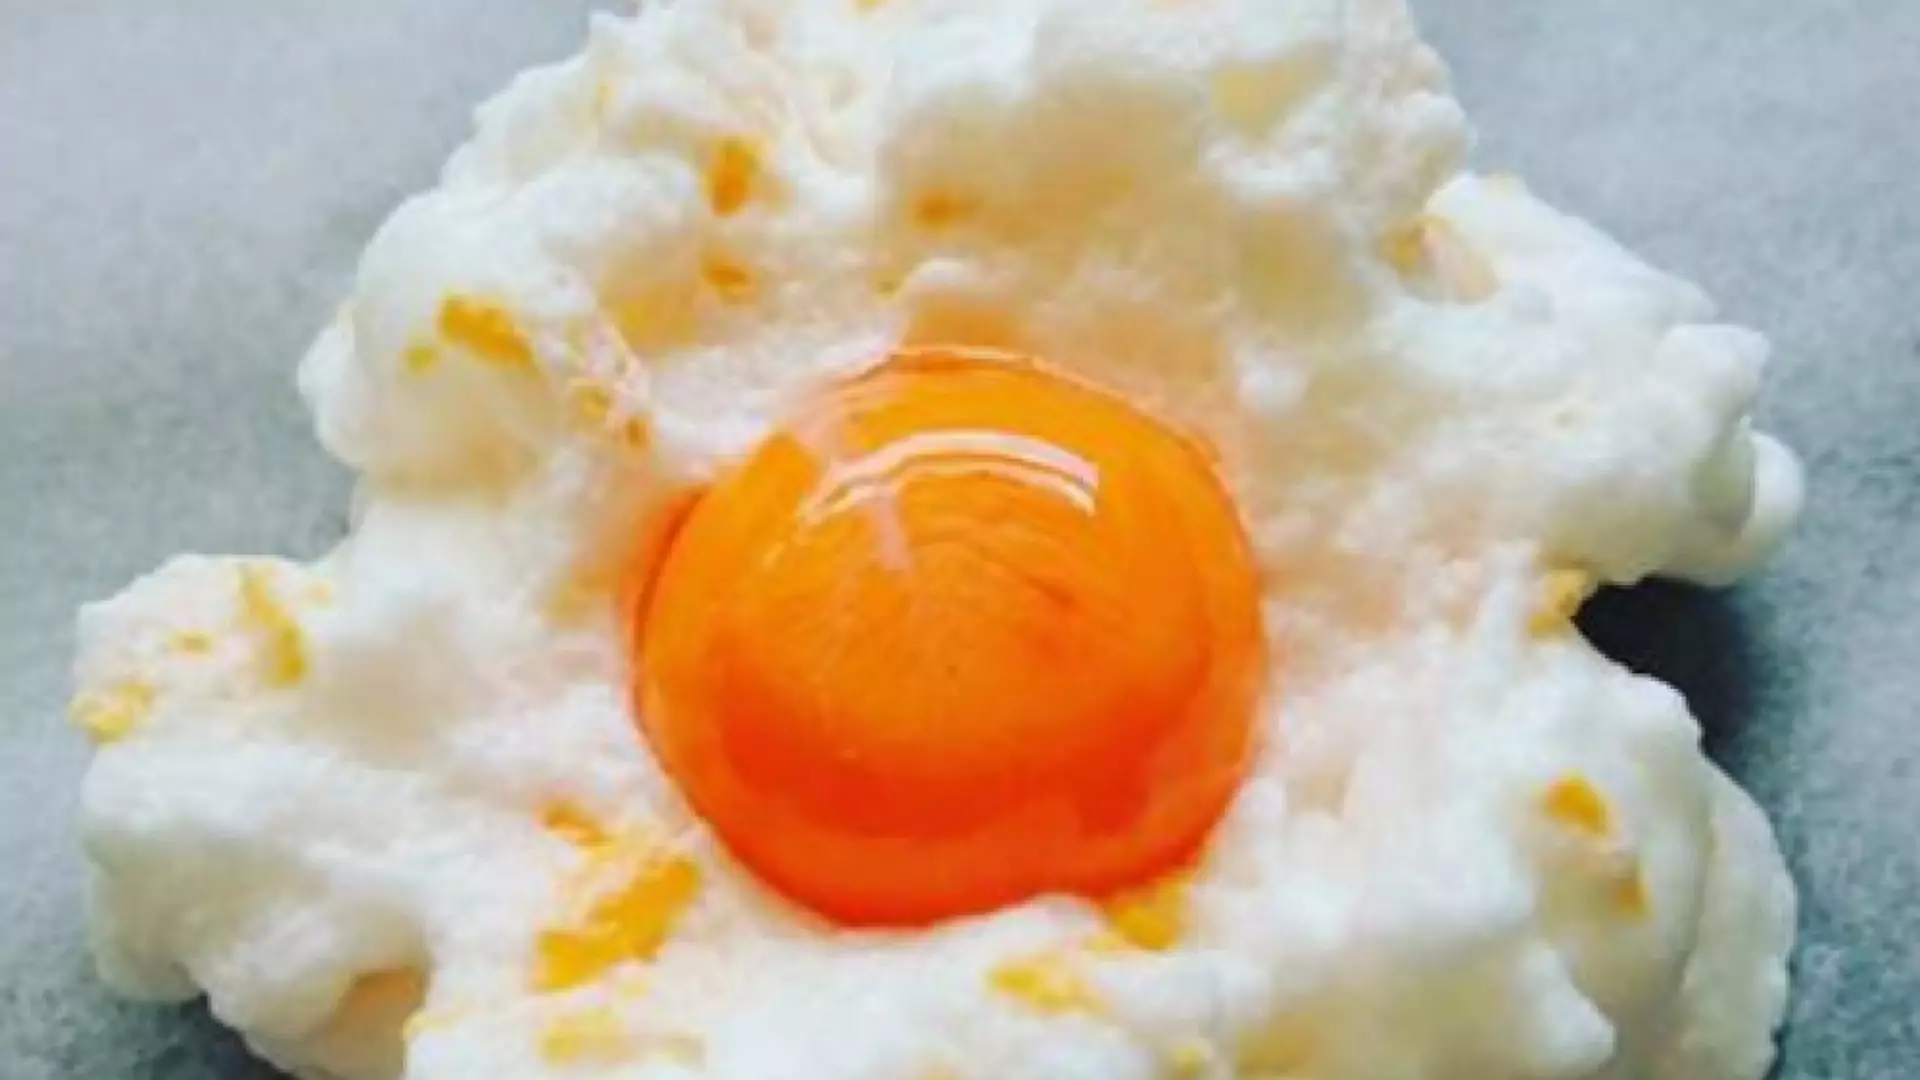 Cloud eggs, czyli jajka na chmurce: płynne żółtko na chrupkiej bezie